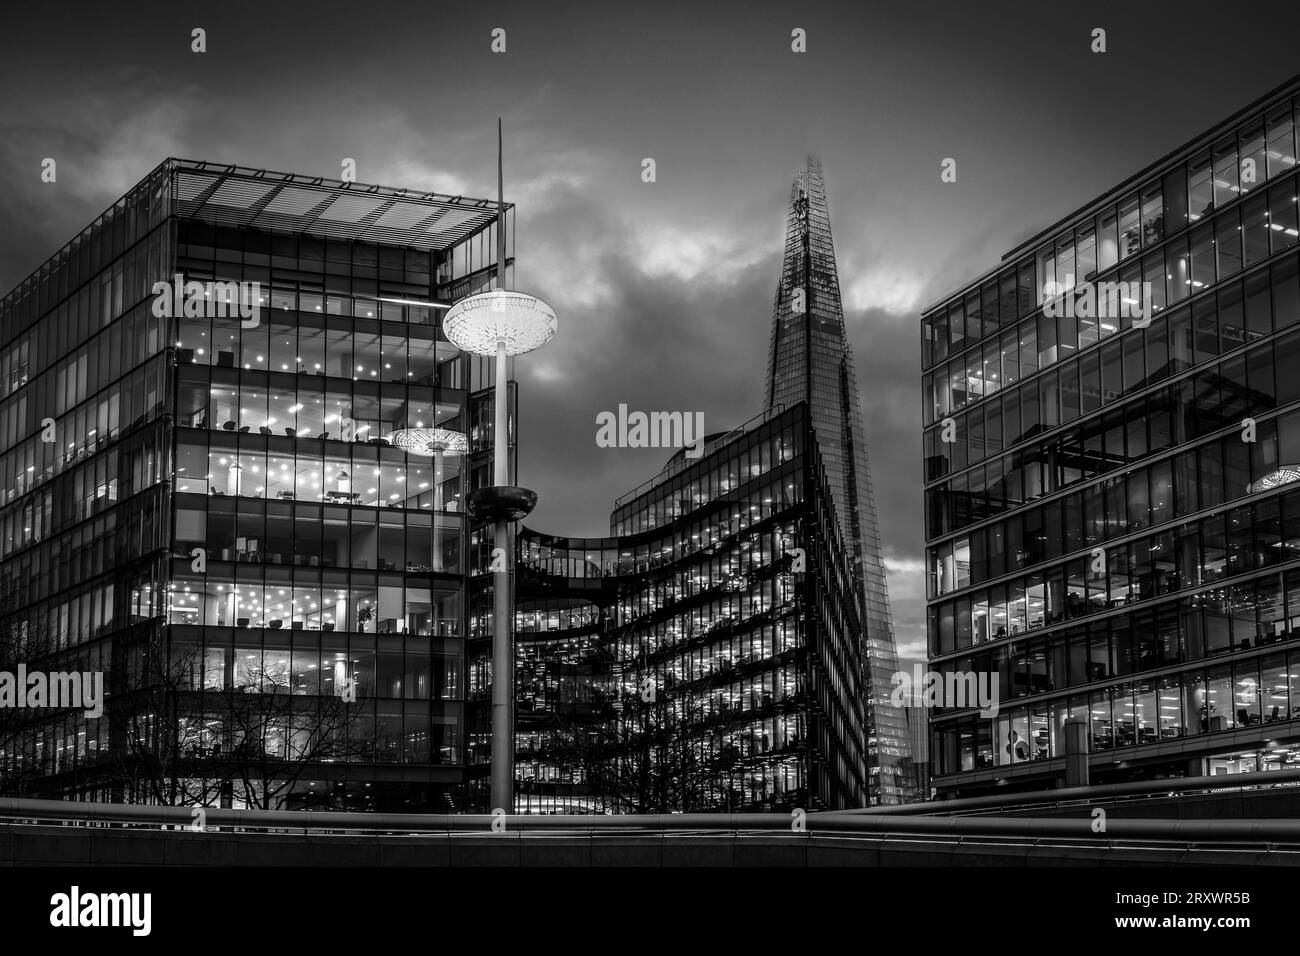 Metropolis - paisaje urbano de Londres a la hora azul - rascacielos con luces de oficina encendidas y reflejos de luz en el río Támesis Foto de stock